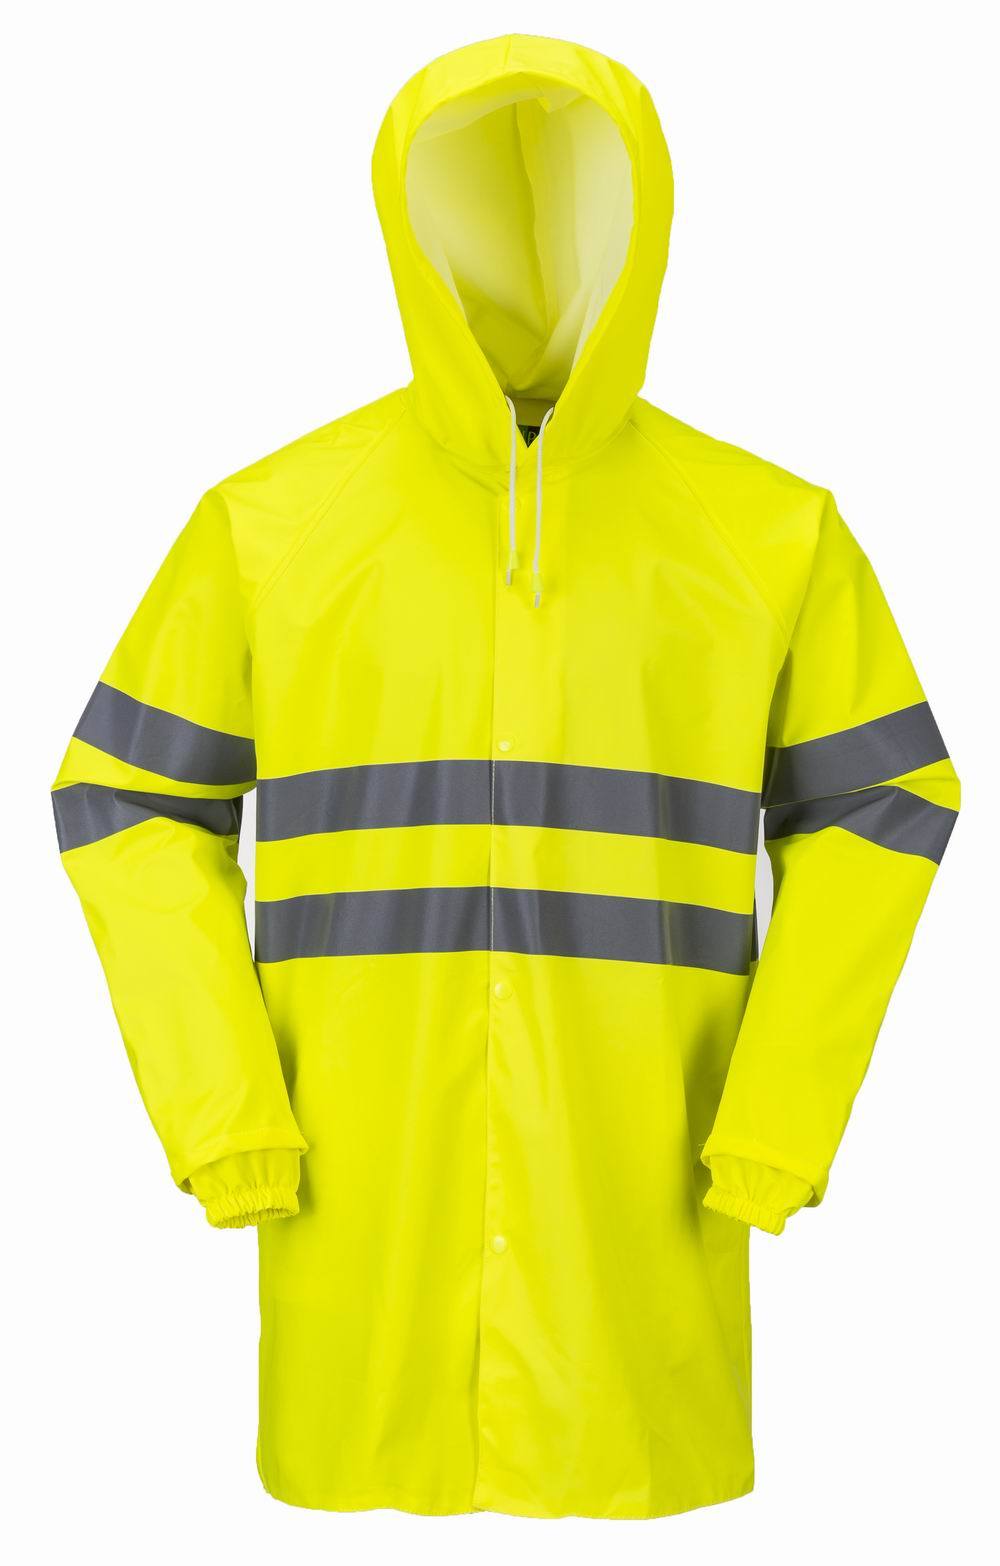 PU Best Price Safety Wear Raincoat Workwear